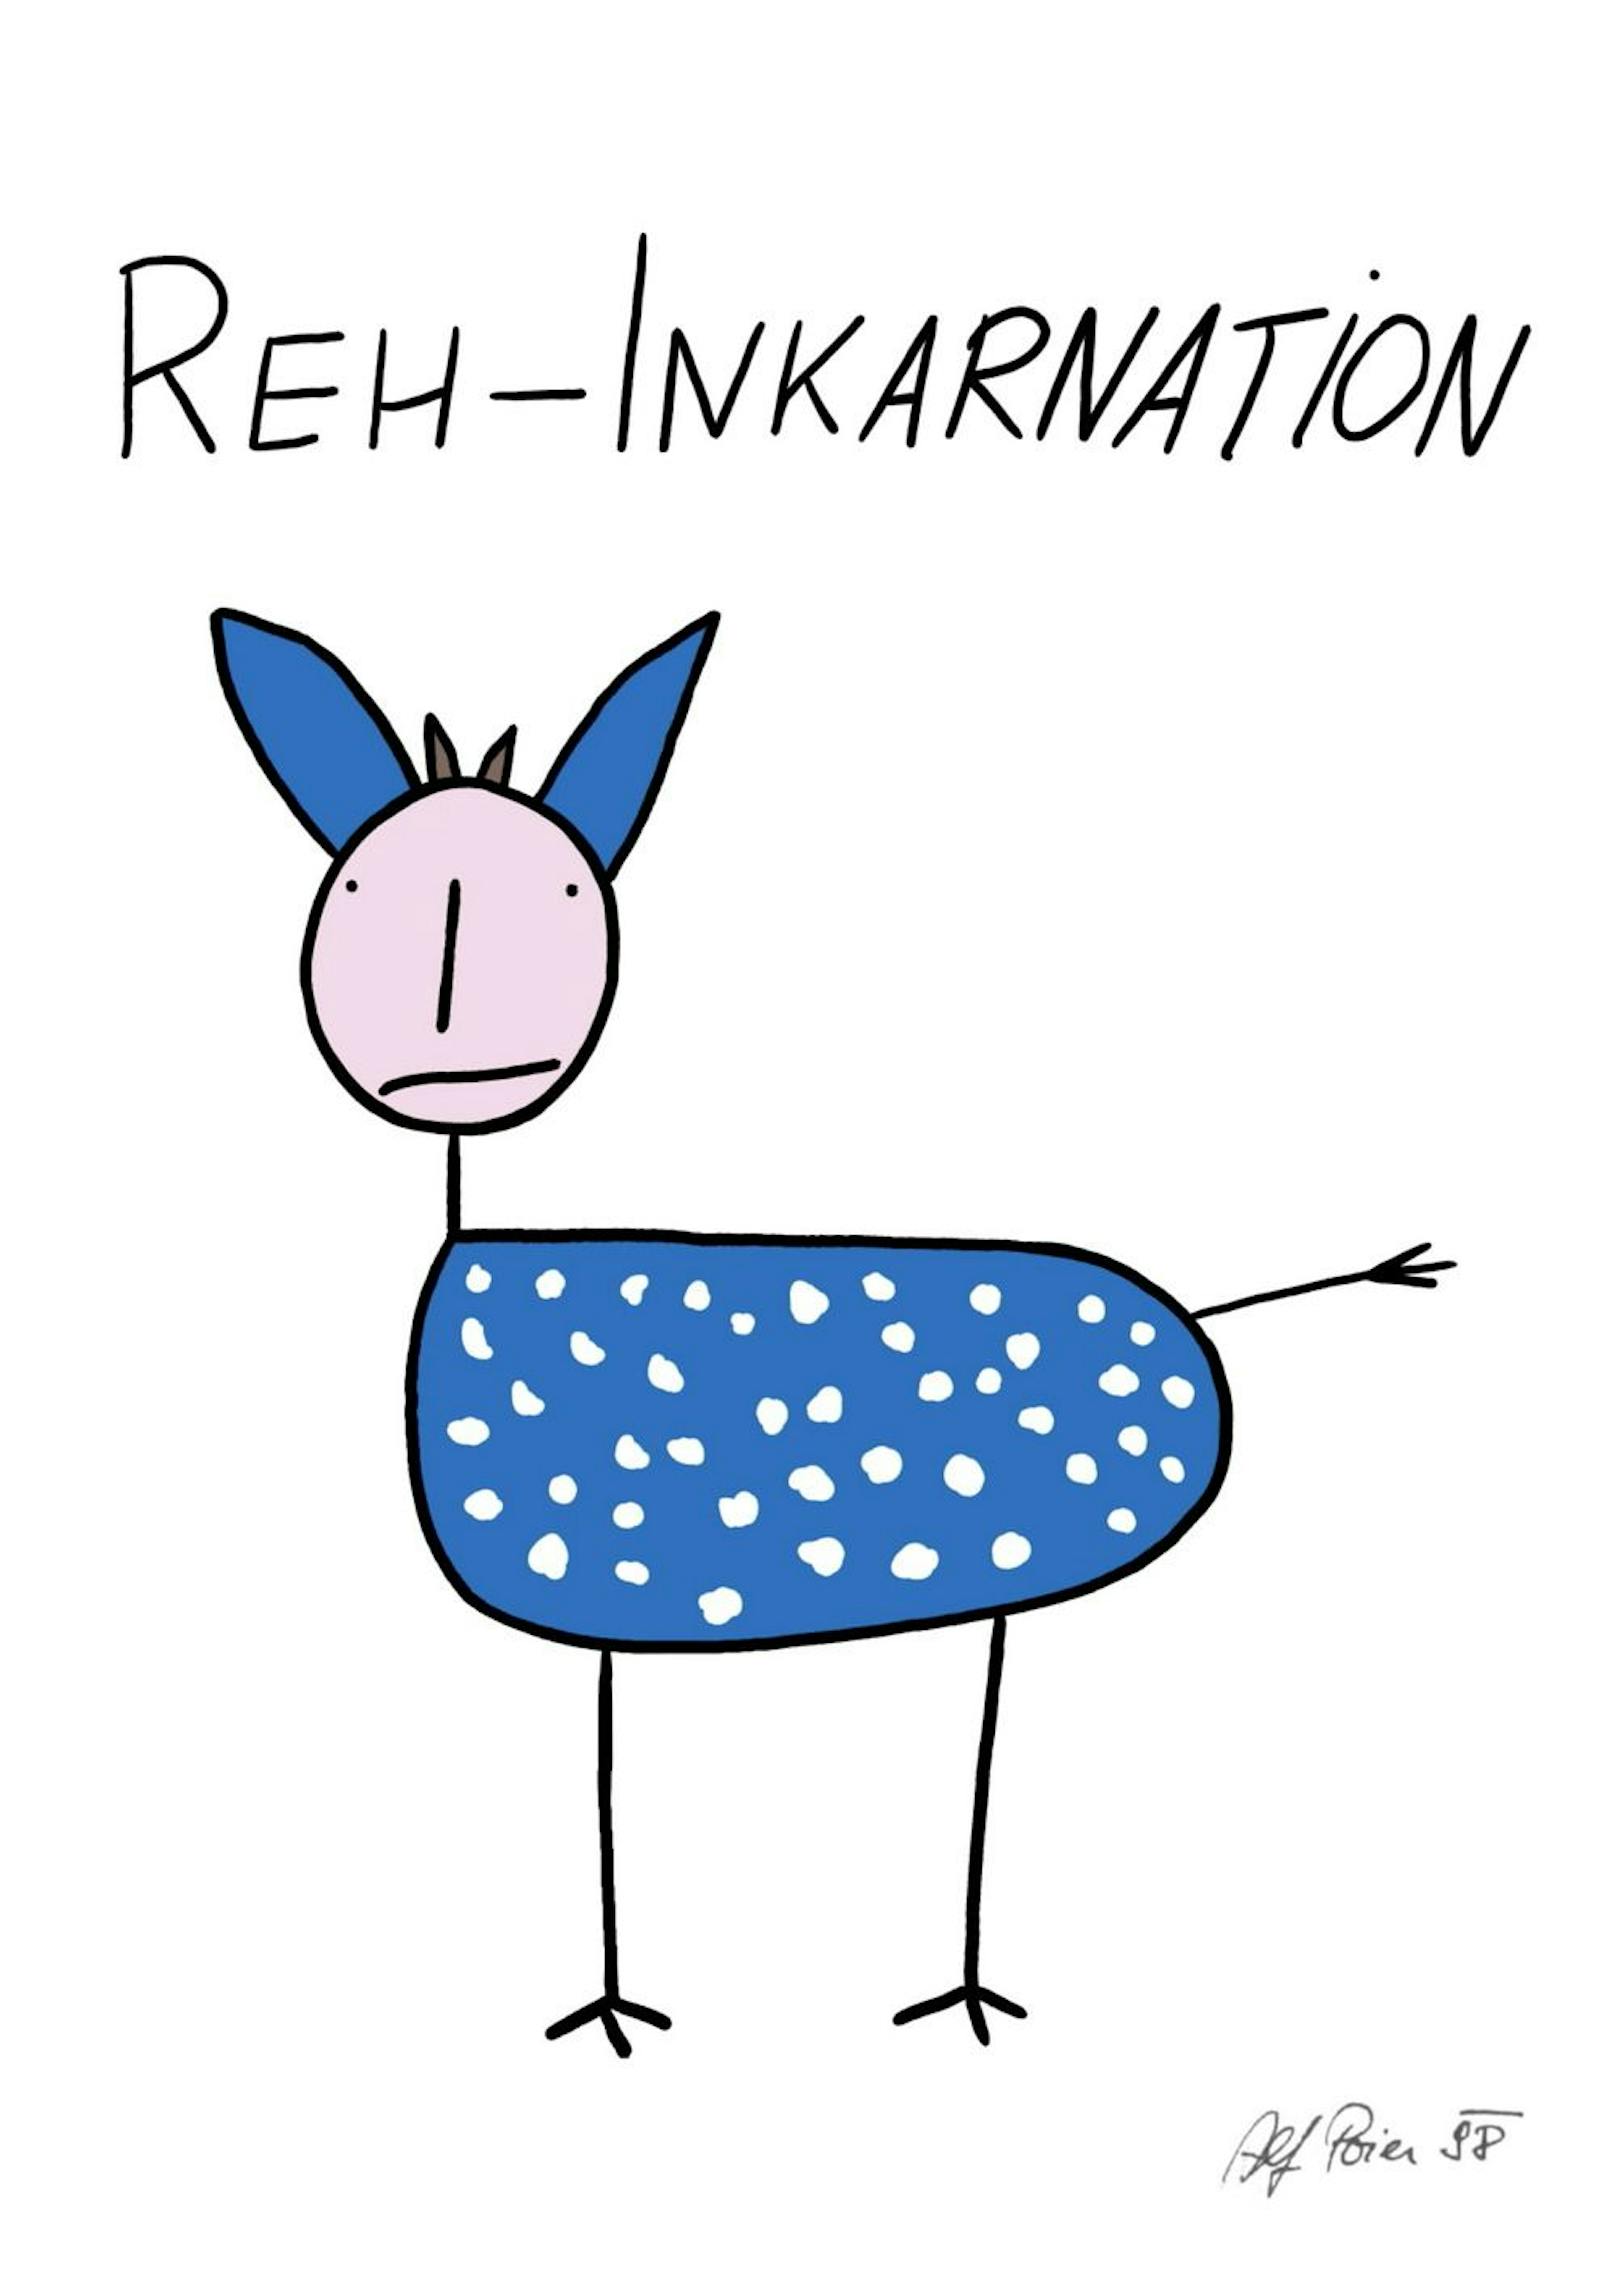 Die "Reh-Inkarnation" von Alf Poier 